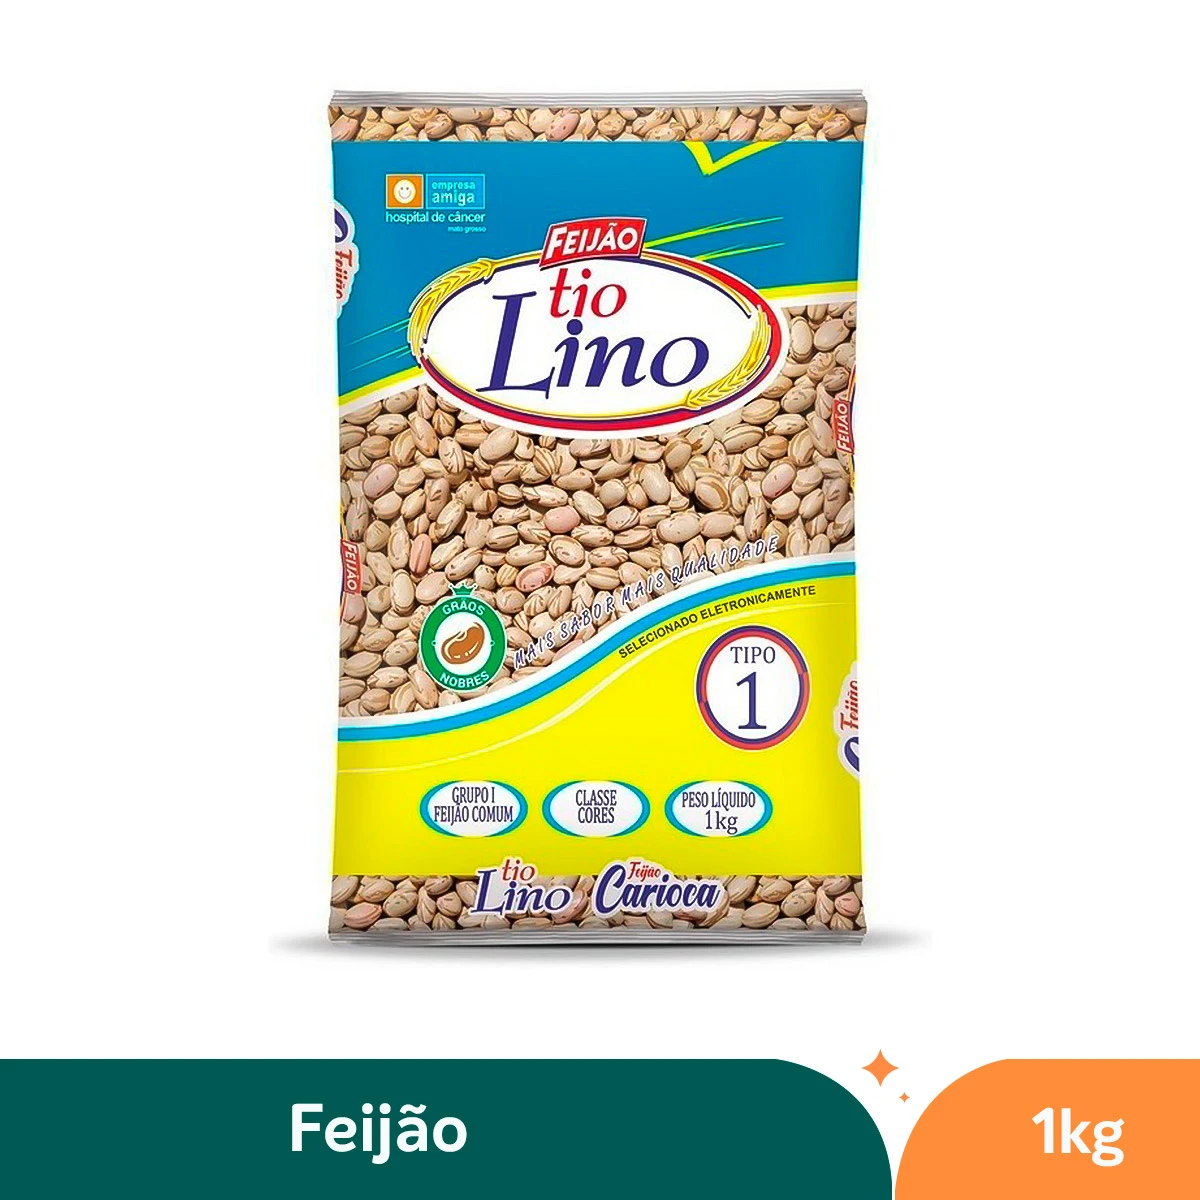 Feijão Carioca Tio Lino - 1kg